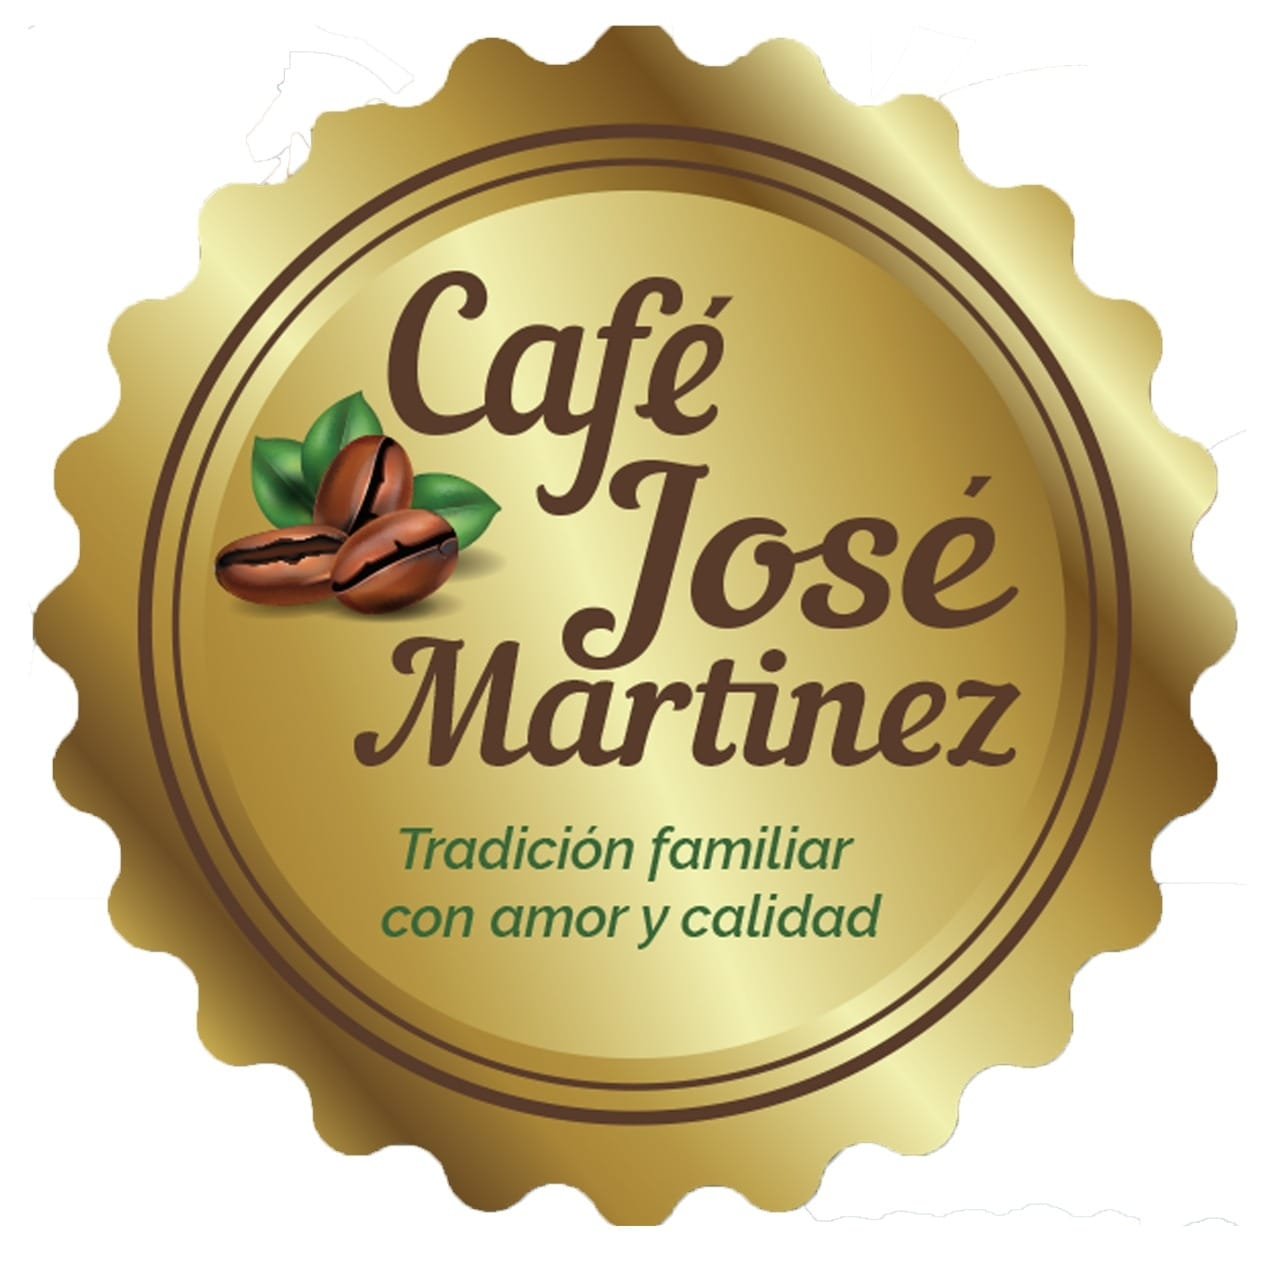 Jose Martinez Cafe de Especialidad